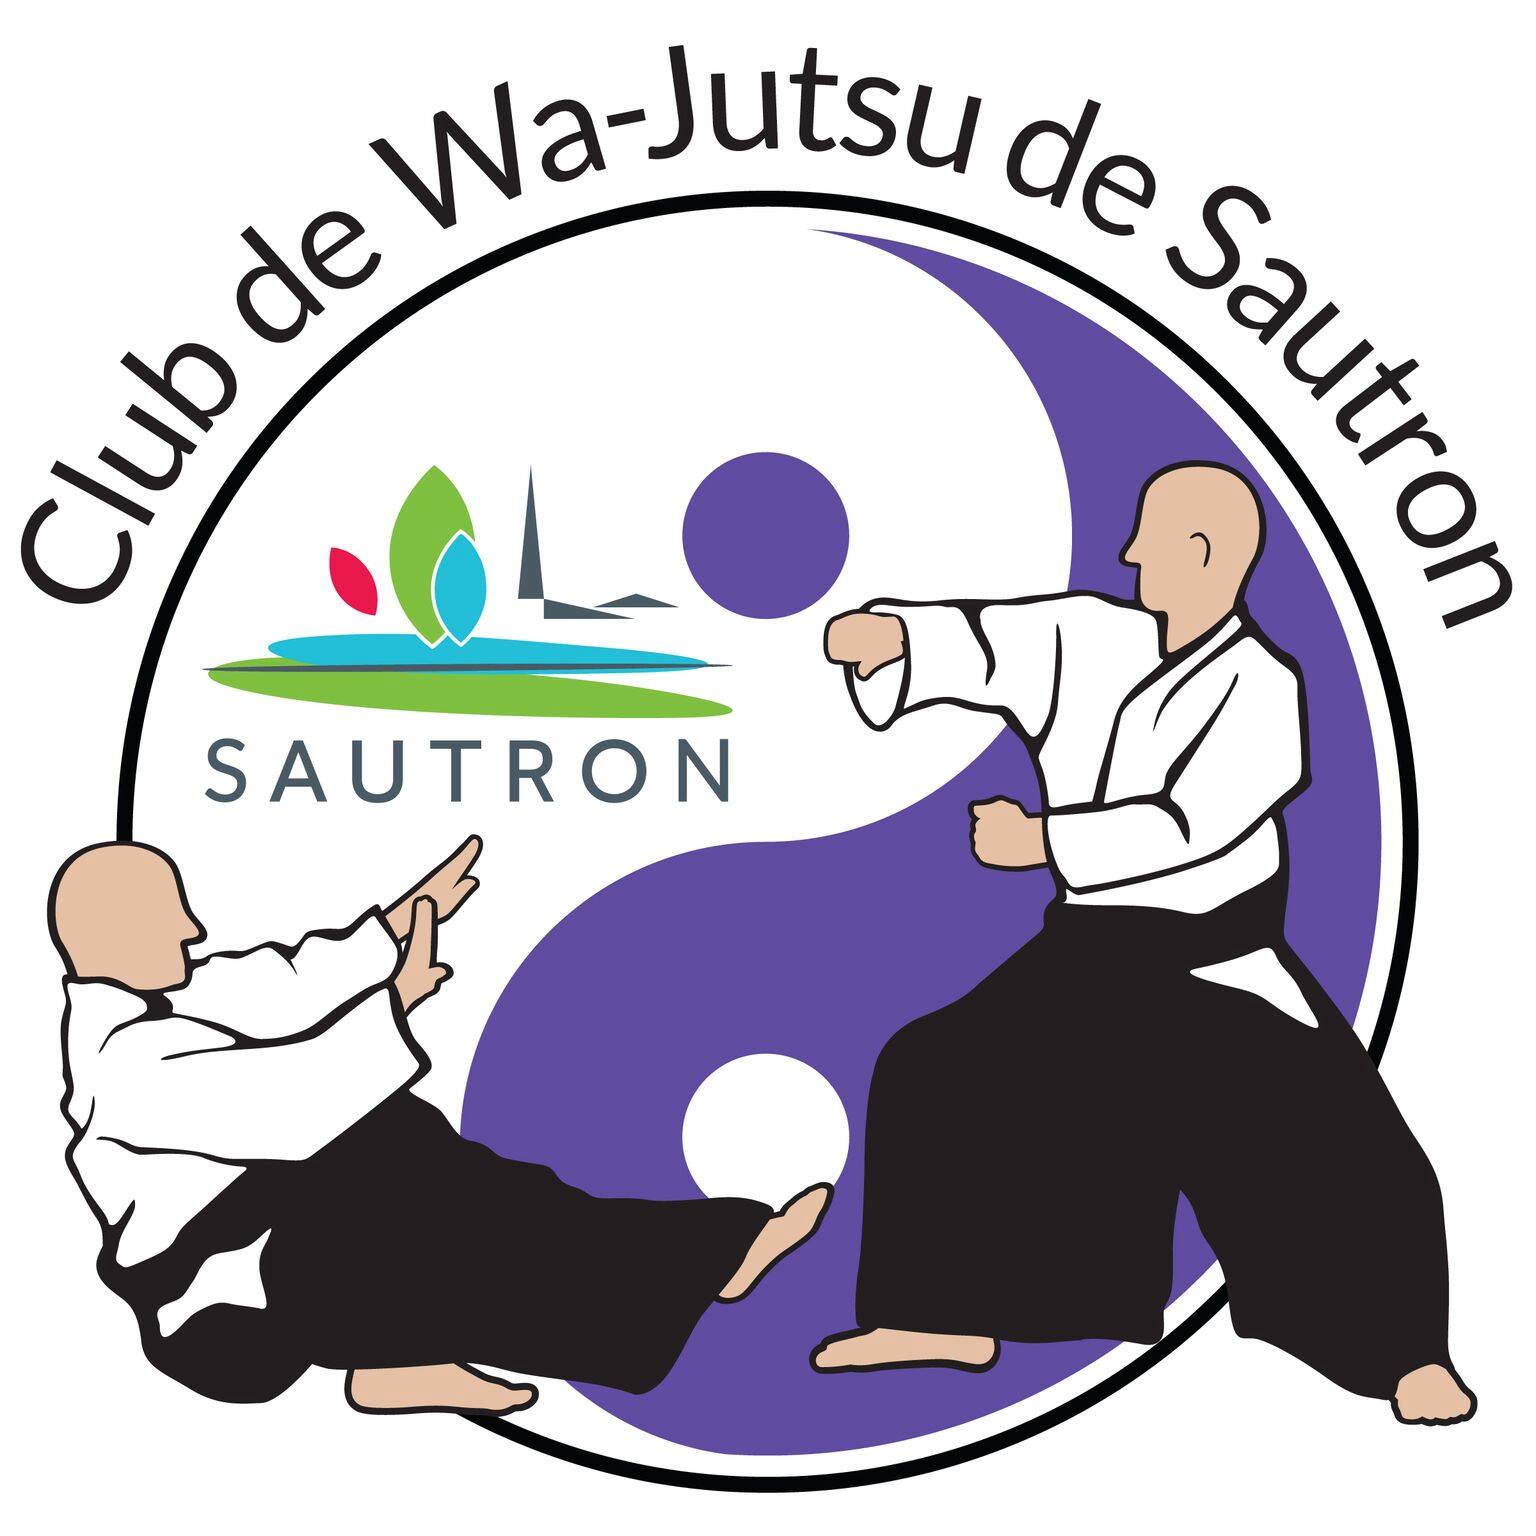 Wa-Jutsu Sautron Logo